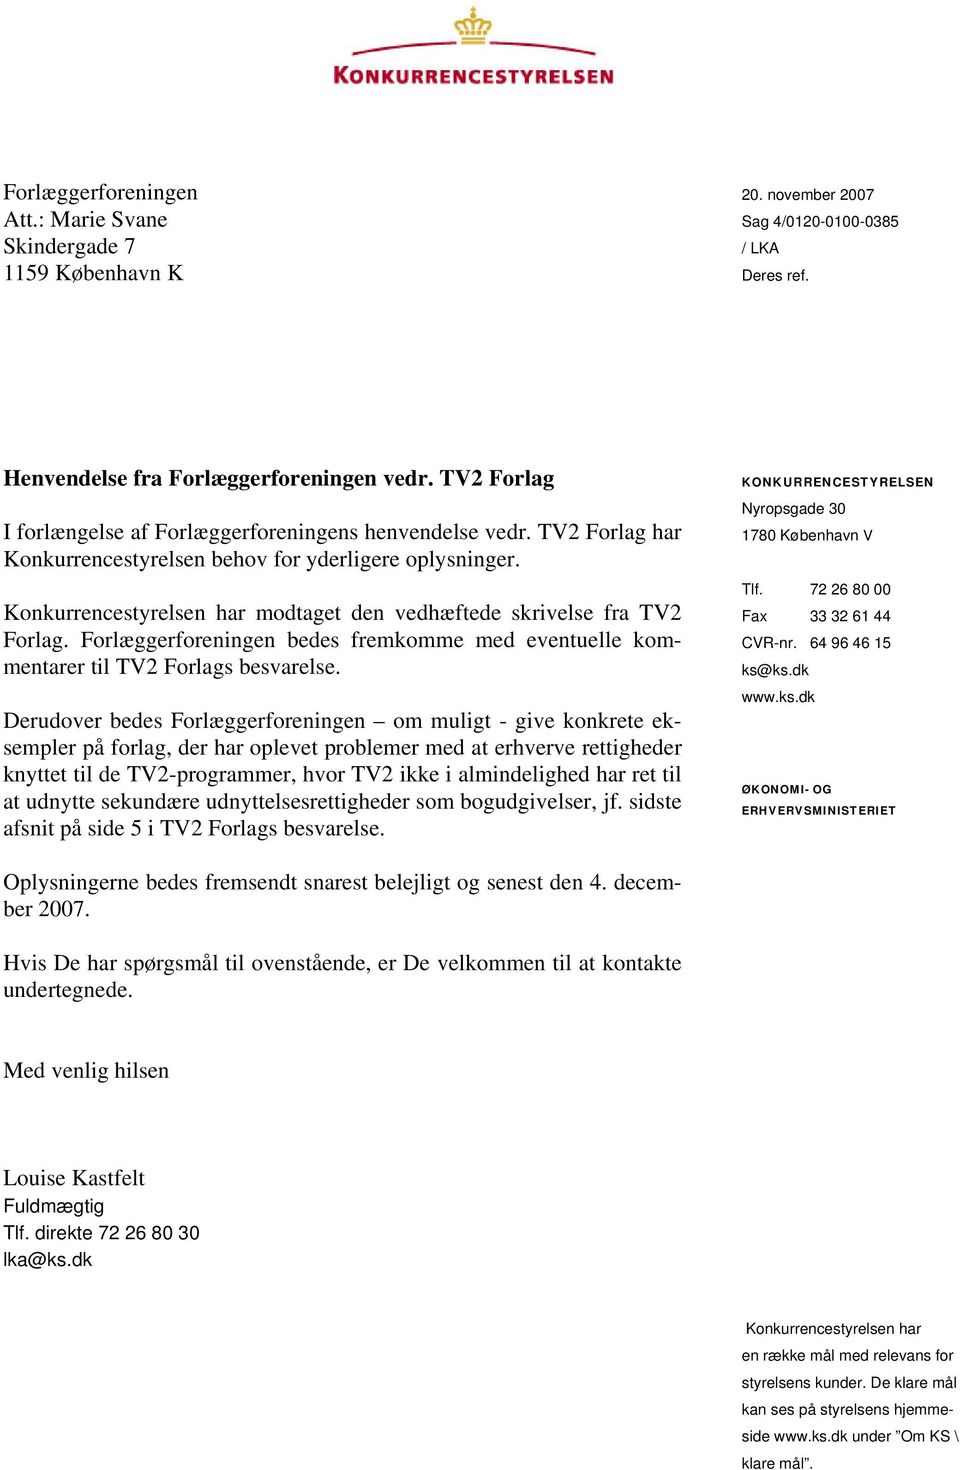 Konkurrencestyrelsen har modtaget den vedhæftede skrivelse fra TV2 Forlag. Forlæggerforeningen bedes fremkomme med eventuelle kommentarer til TV2 Forlags besvarelse.